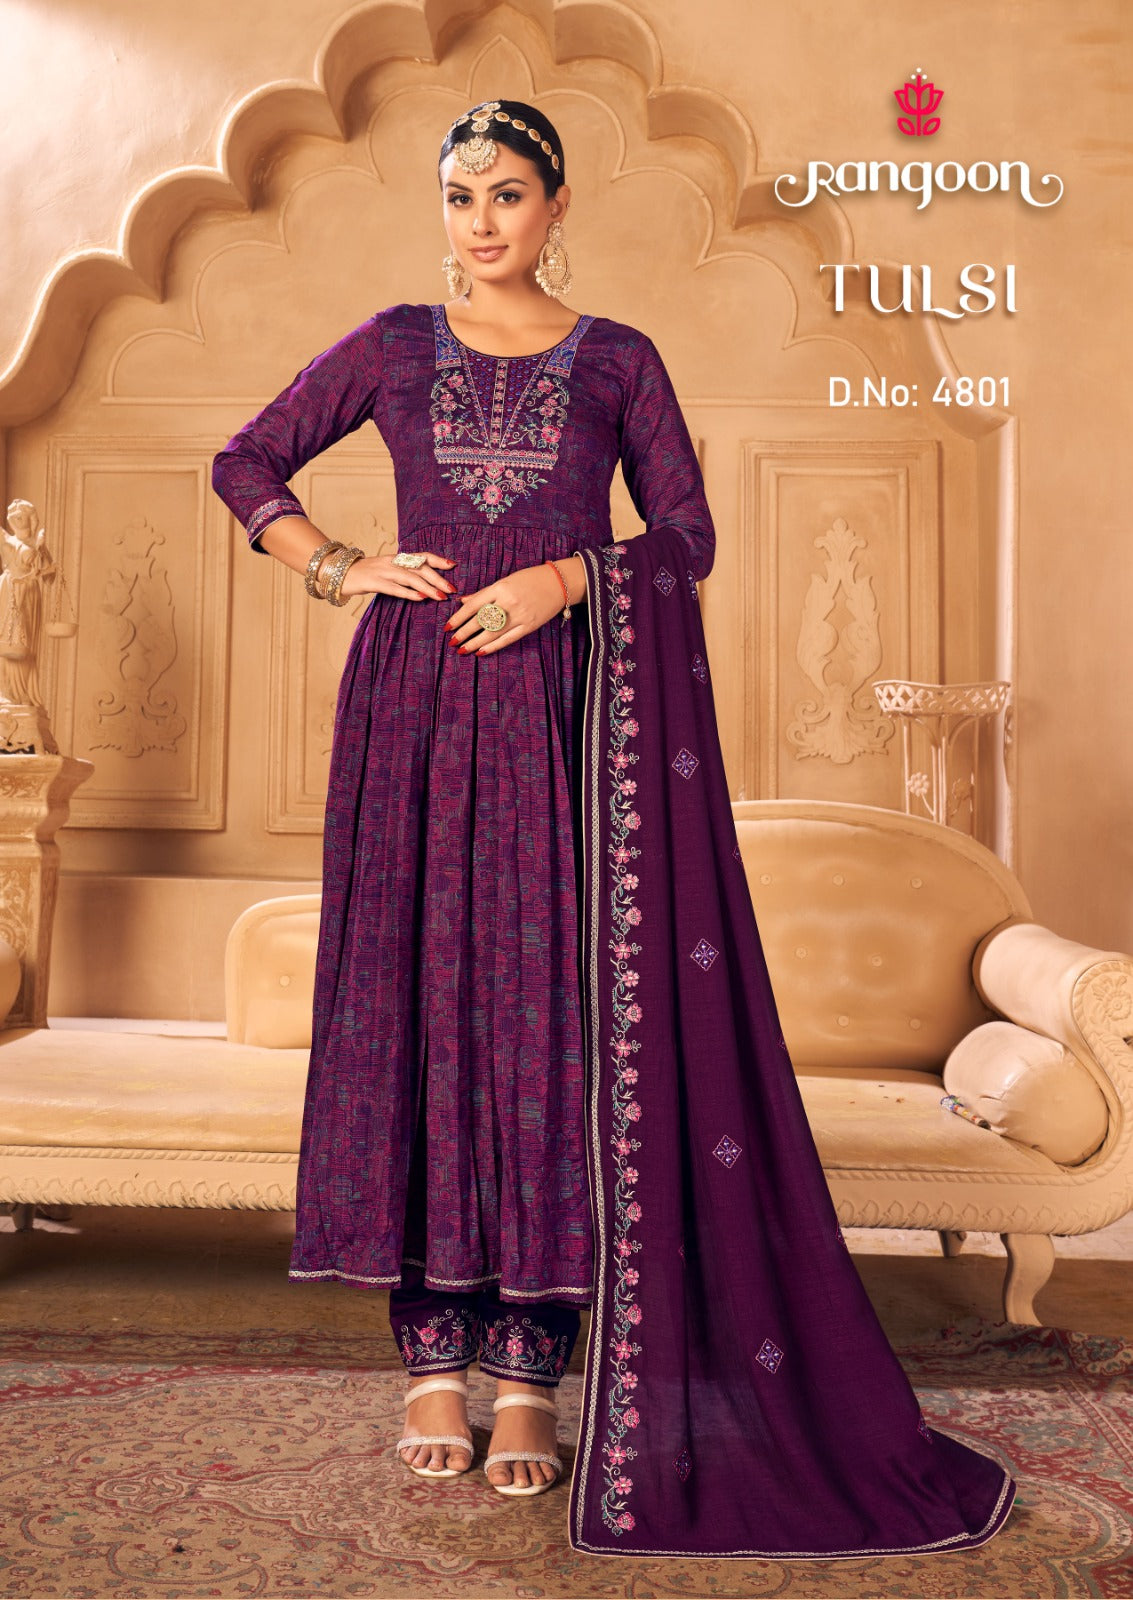 Tulsi 4801 To 4804 Rangoon Silk Readymade Anarkali Suits